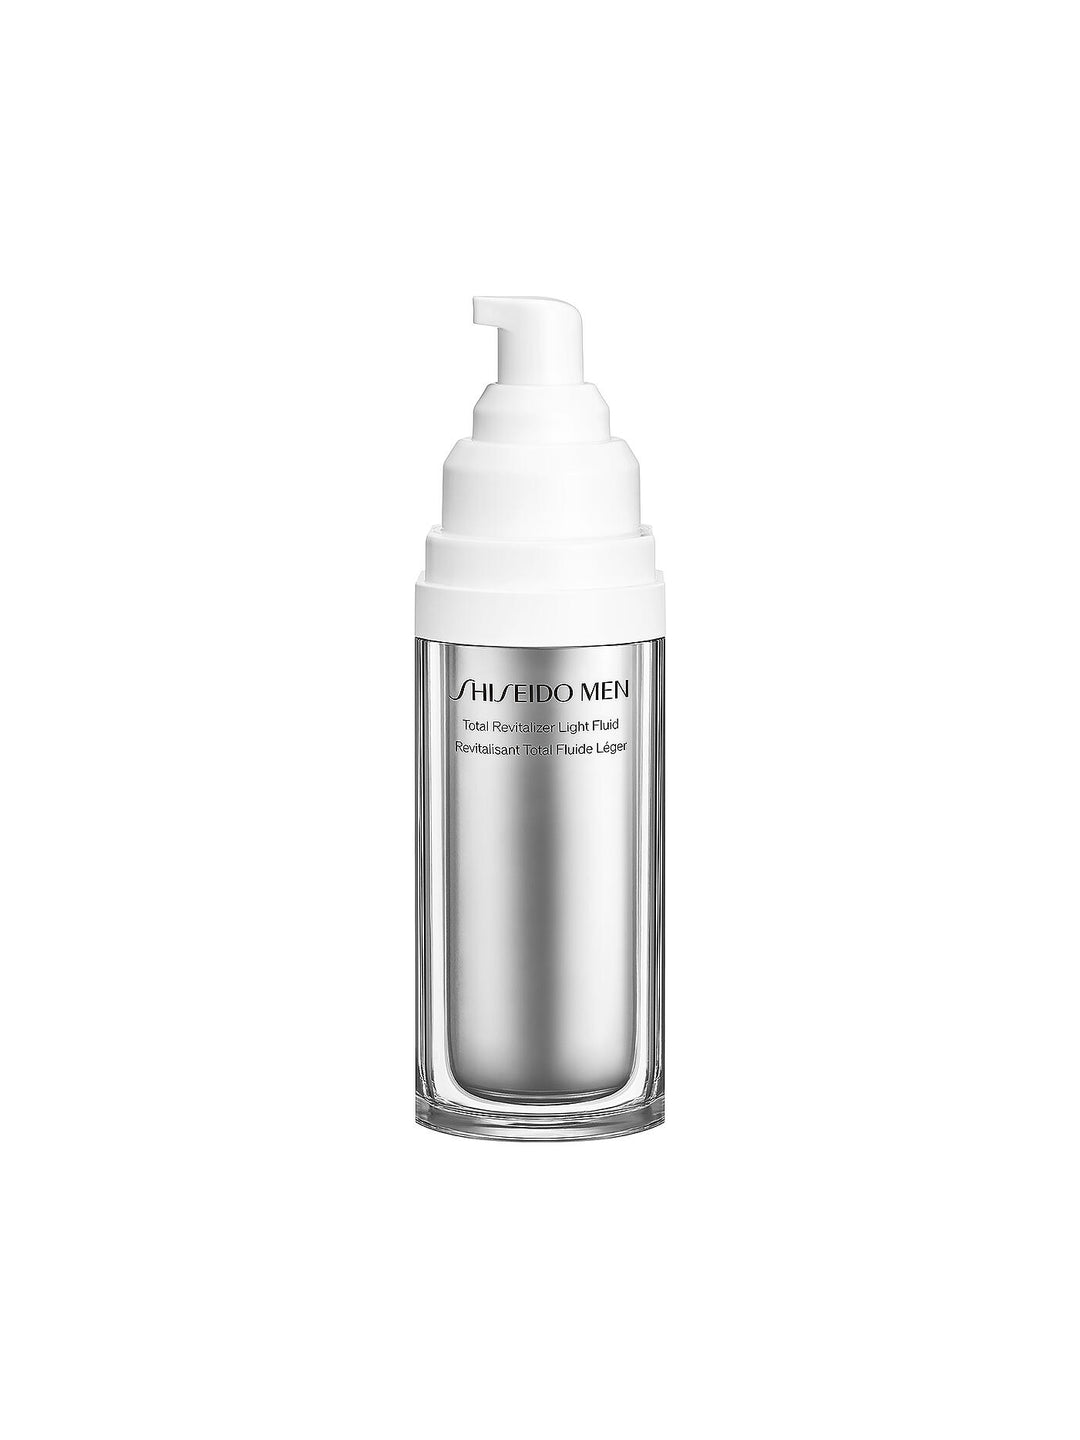 shiseido-men-total-revitalizer-light-fluid-70ml